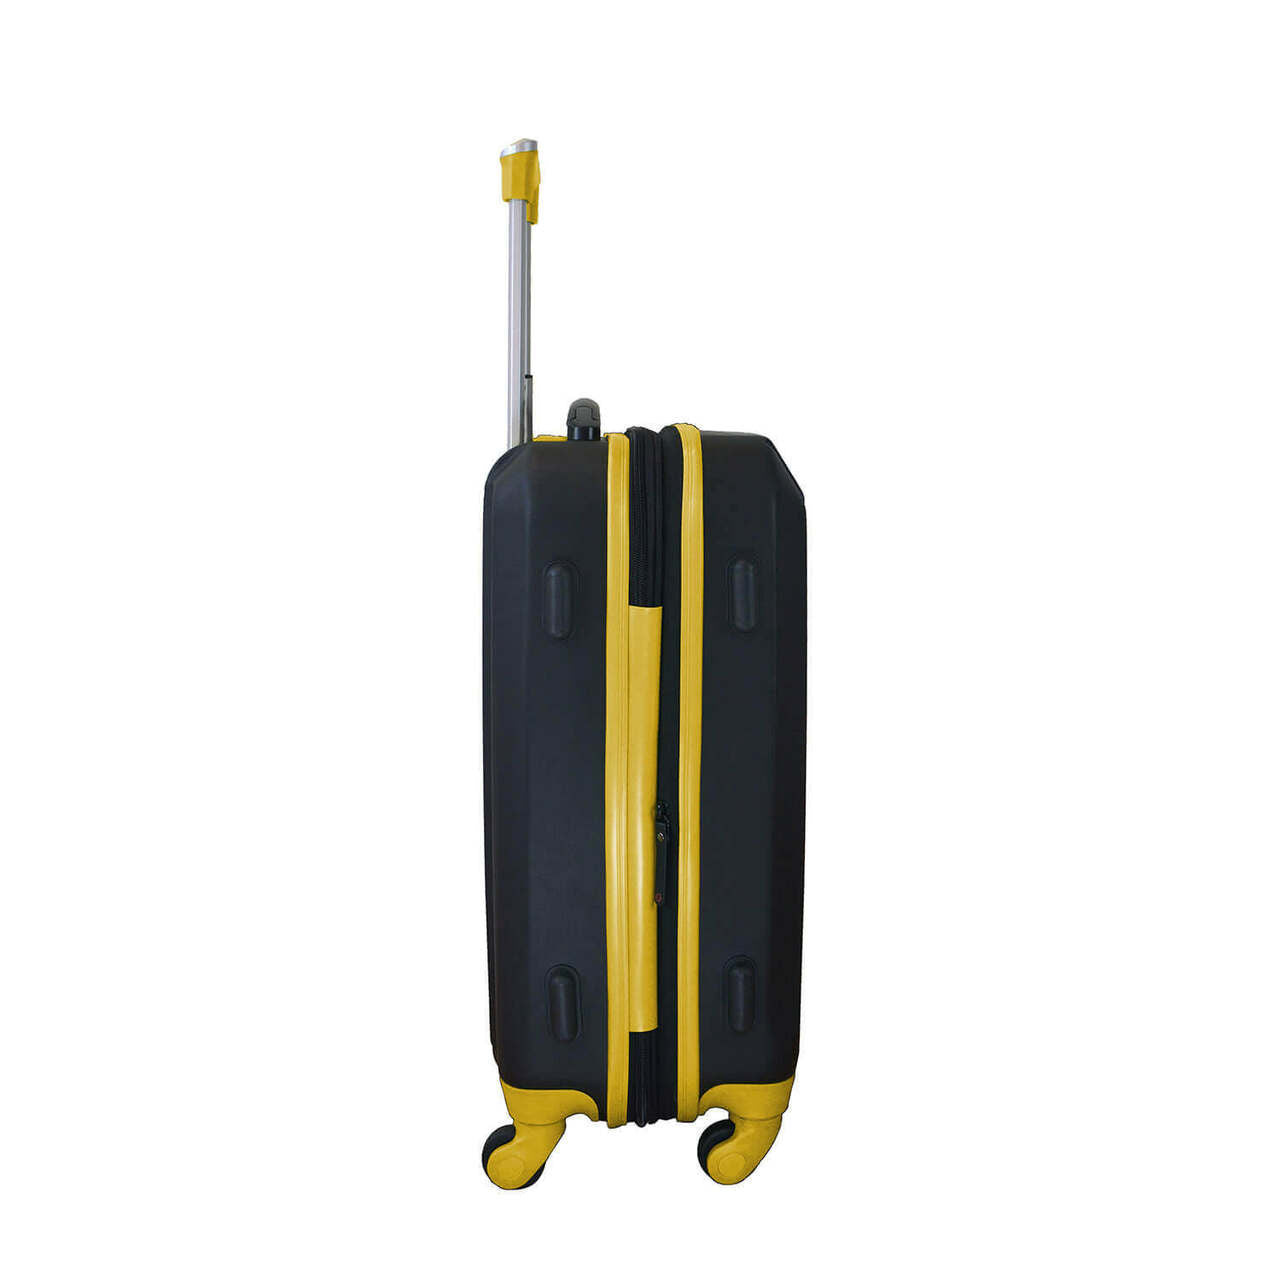 Baylor Carry On Spinner Luggage | Baylor Hardcase Two-Tone Luggage Carry-on Spinner in Yellow